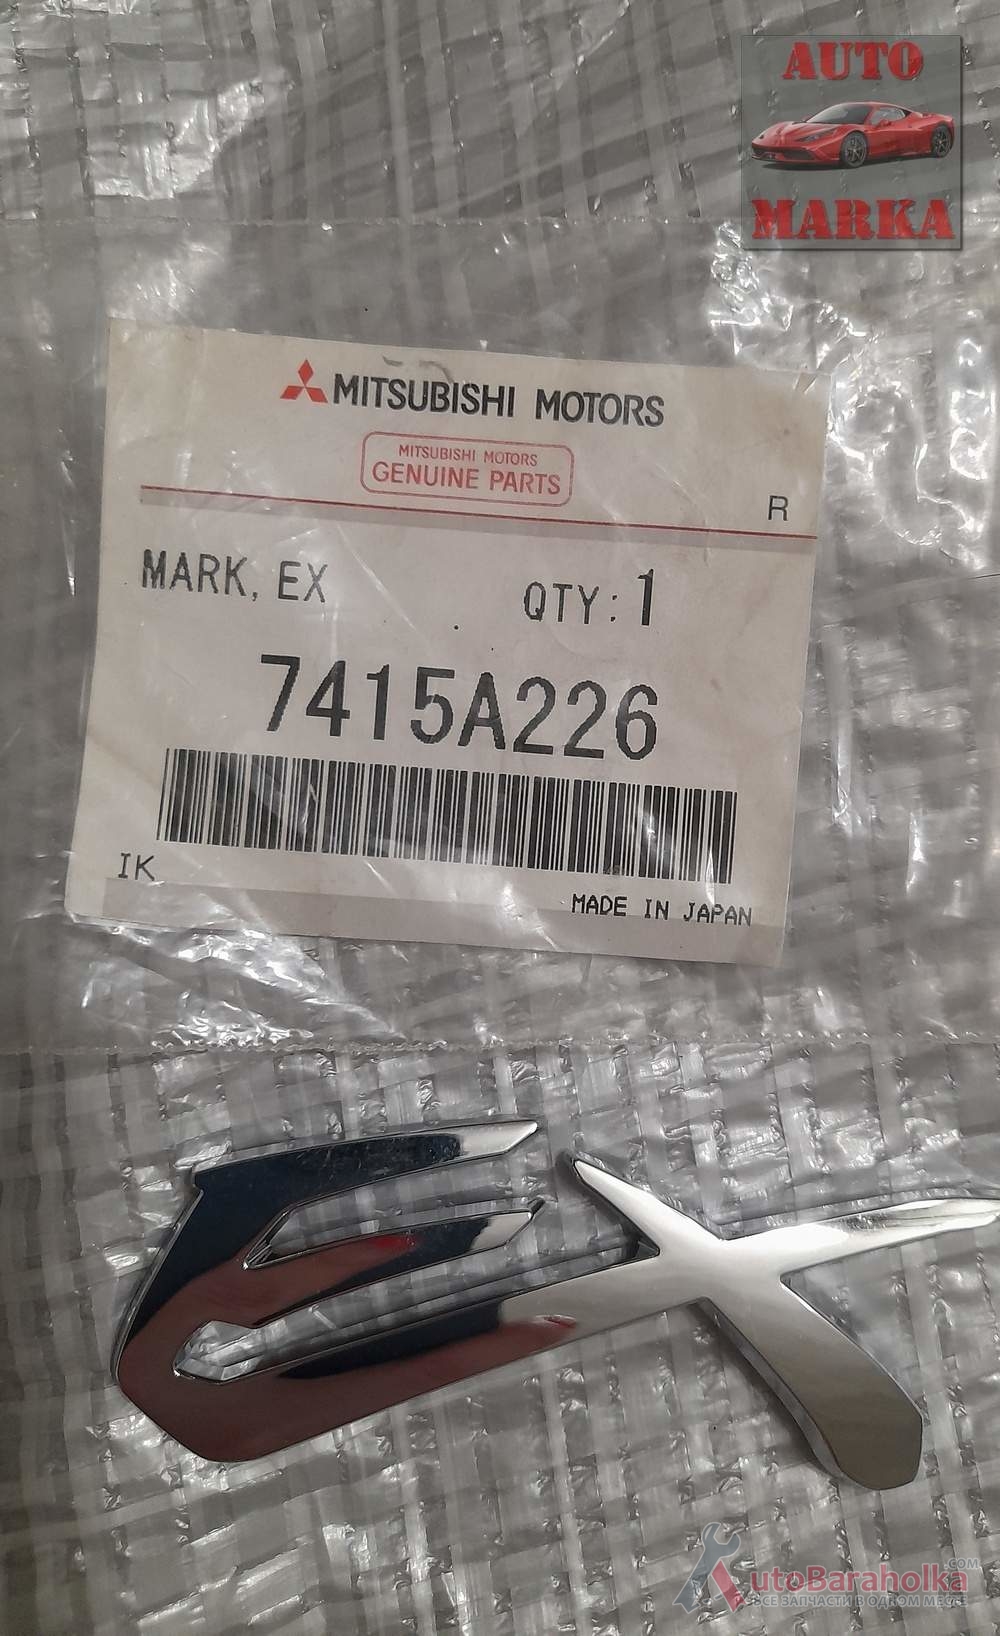 Продам Mitsubishi 7415A226 Эмблема Одесса